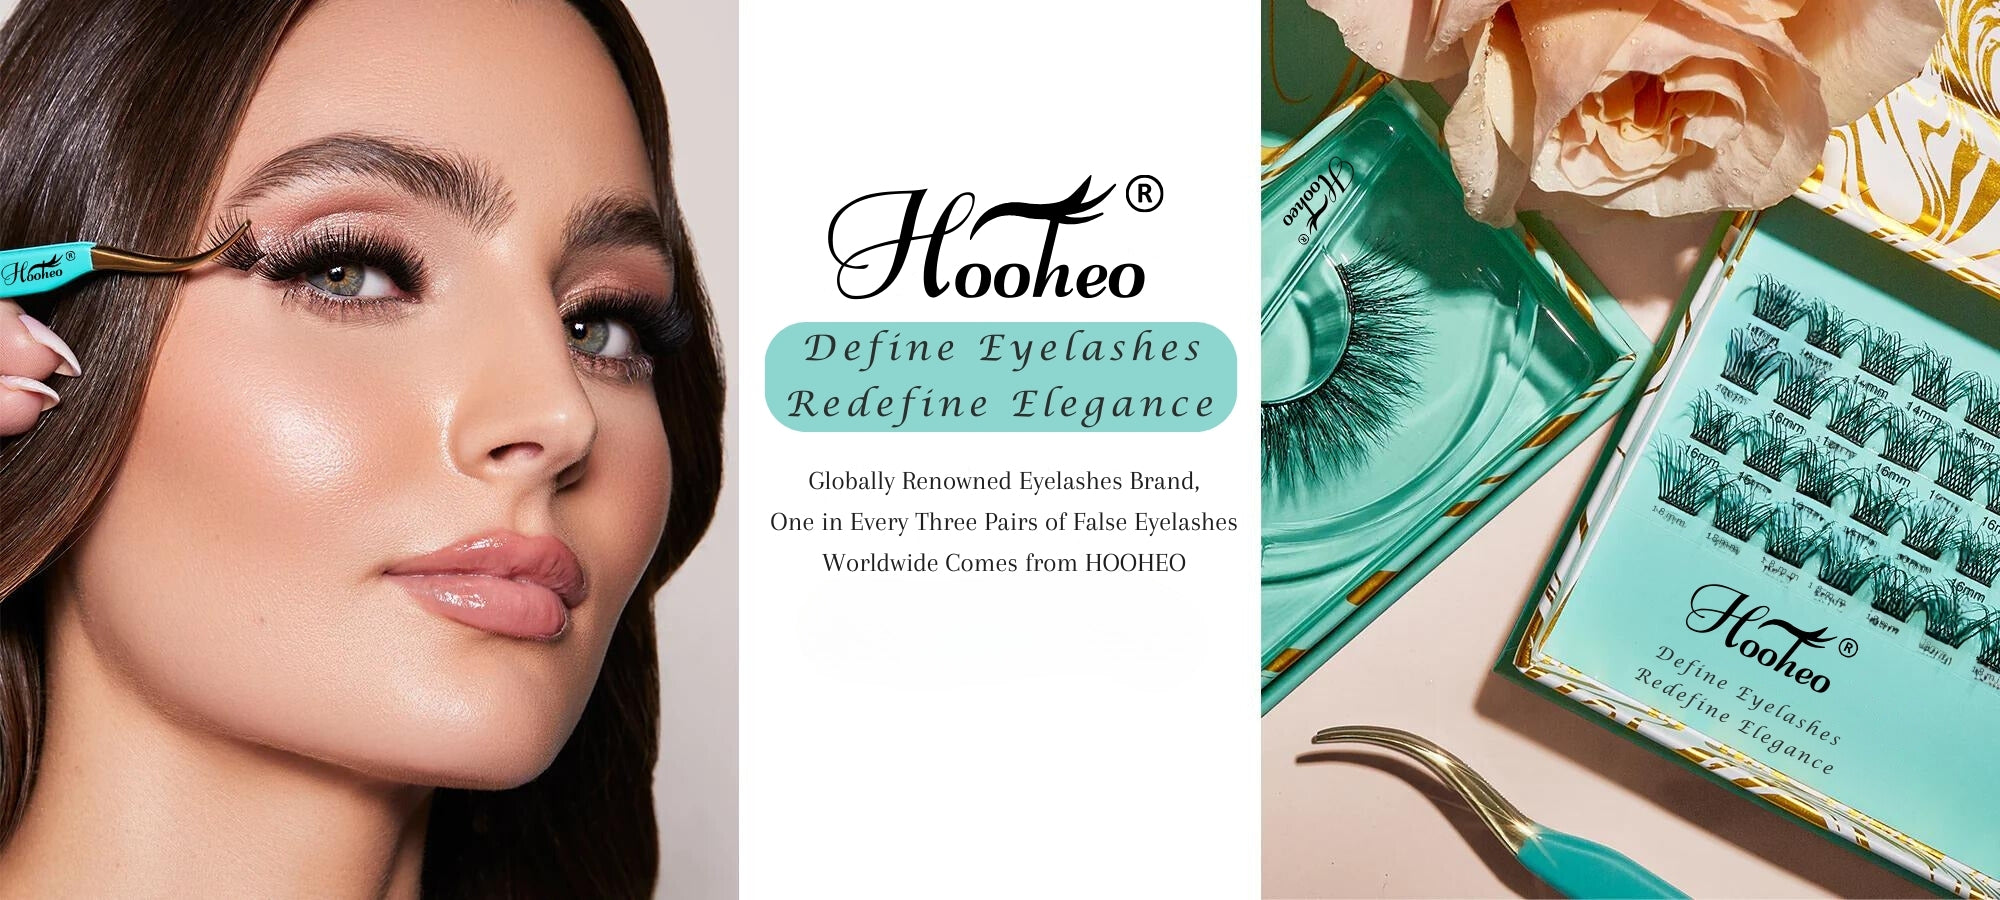 hooheo lashes Define Eyelashes Redefine Elegance Globally Renowned Eyelashes Brand,  One in Every Three Pairs of False Eyelashes Worldwide Comes from HOOHEO